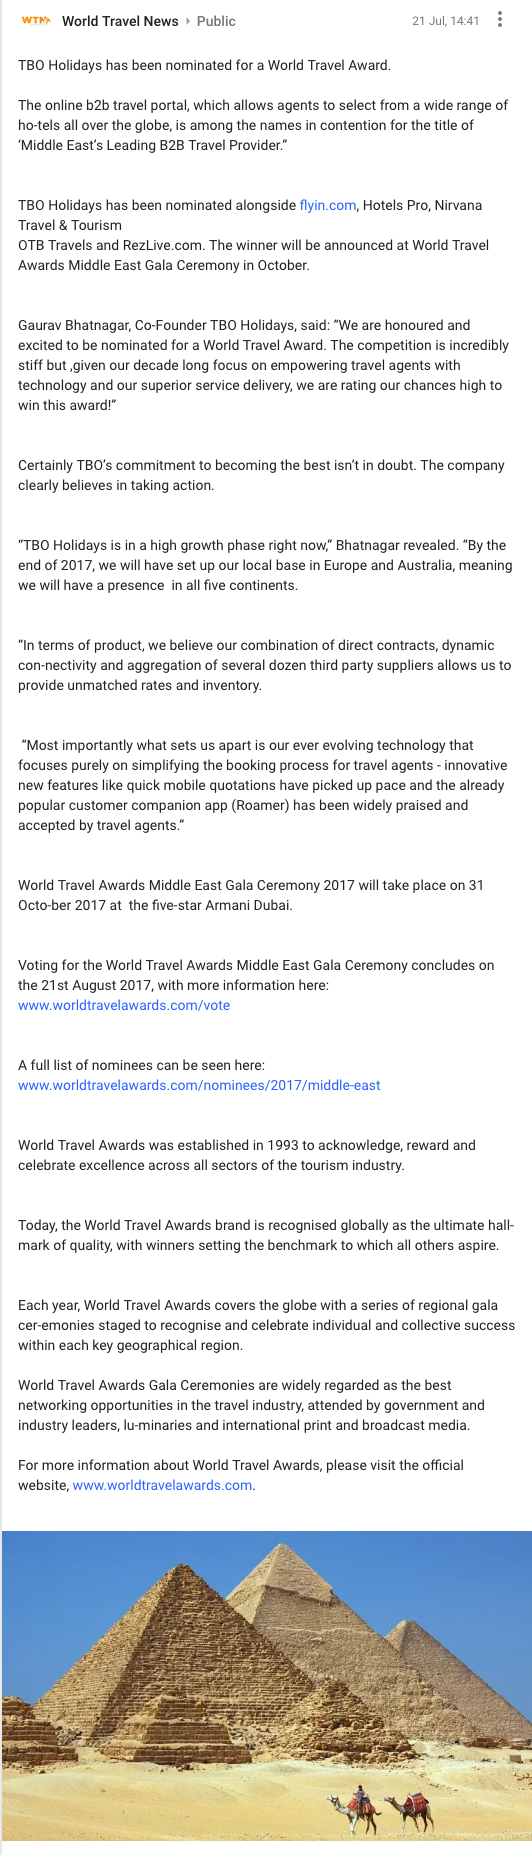 TBO Holidays nominated for a prestigious World Travel Award  